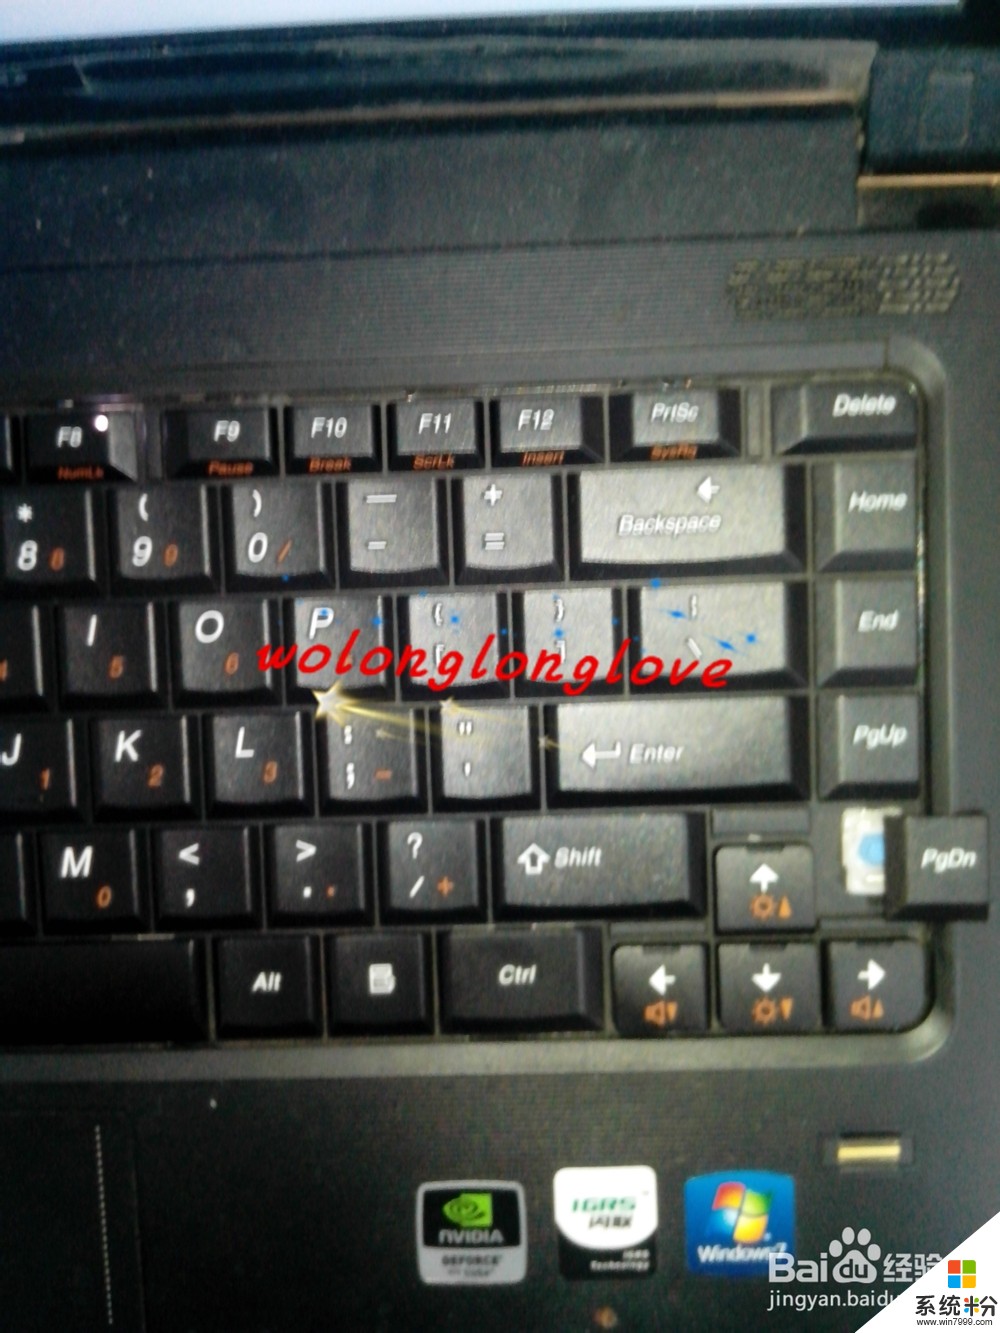 键盘上有键坏了该怎么办 如何把键盘上坏的键给替换了